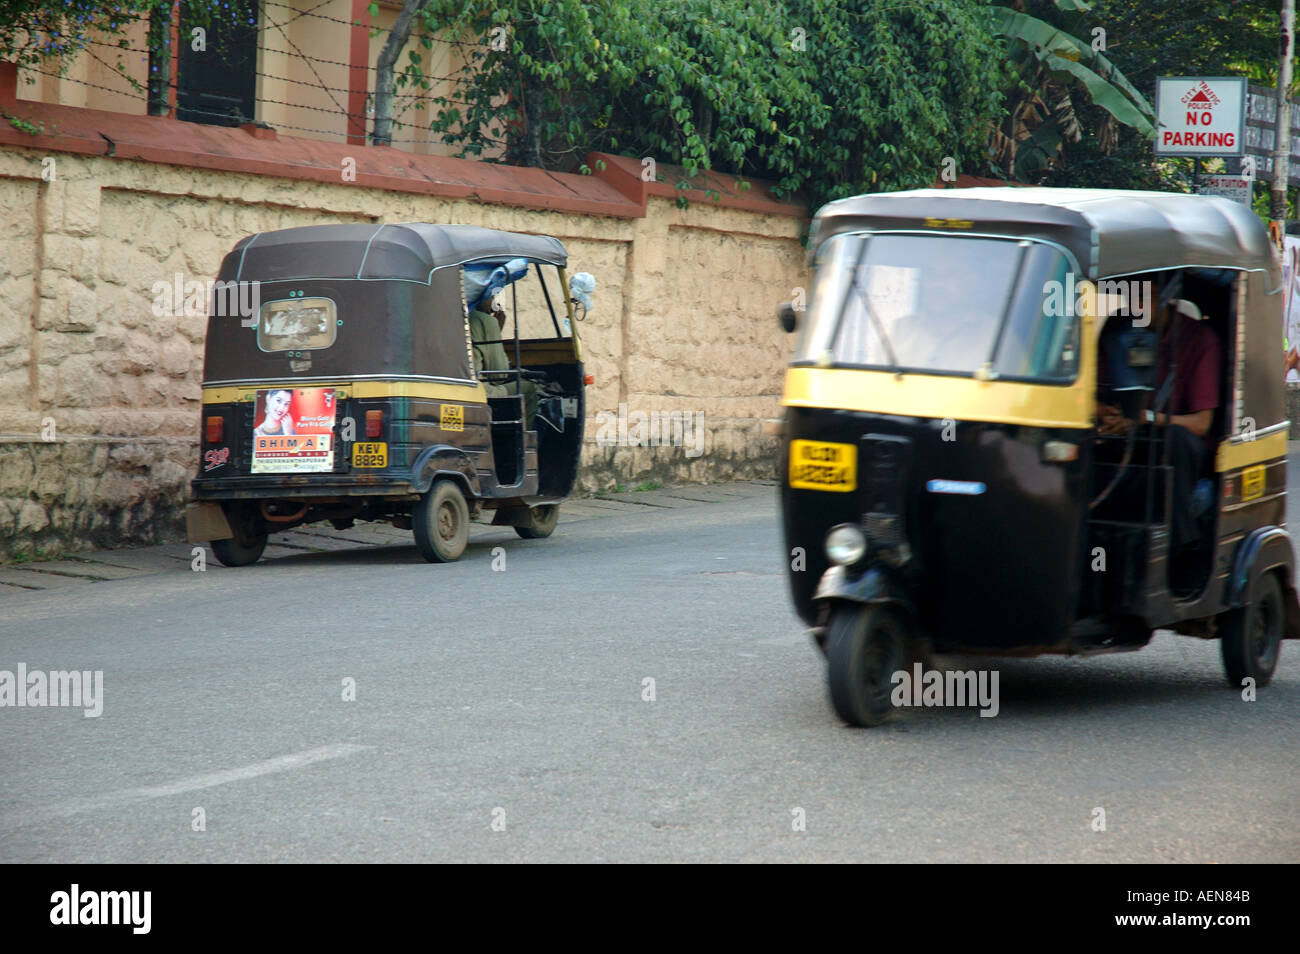 Two auto rickshaws in road in Trivandrum Thiruvananthapuram Kerala India travel Stock Photo